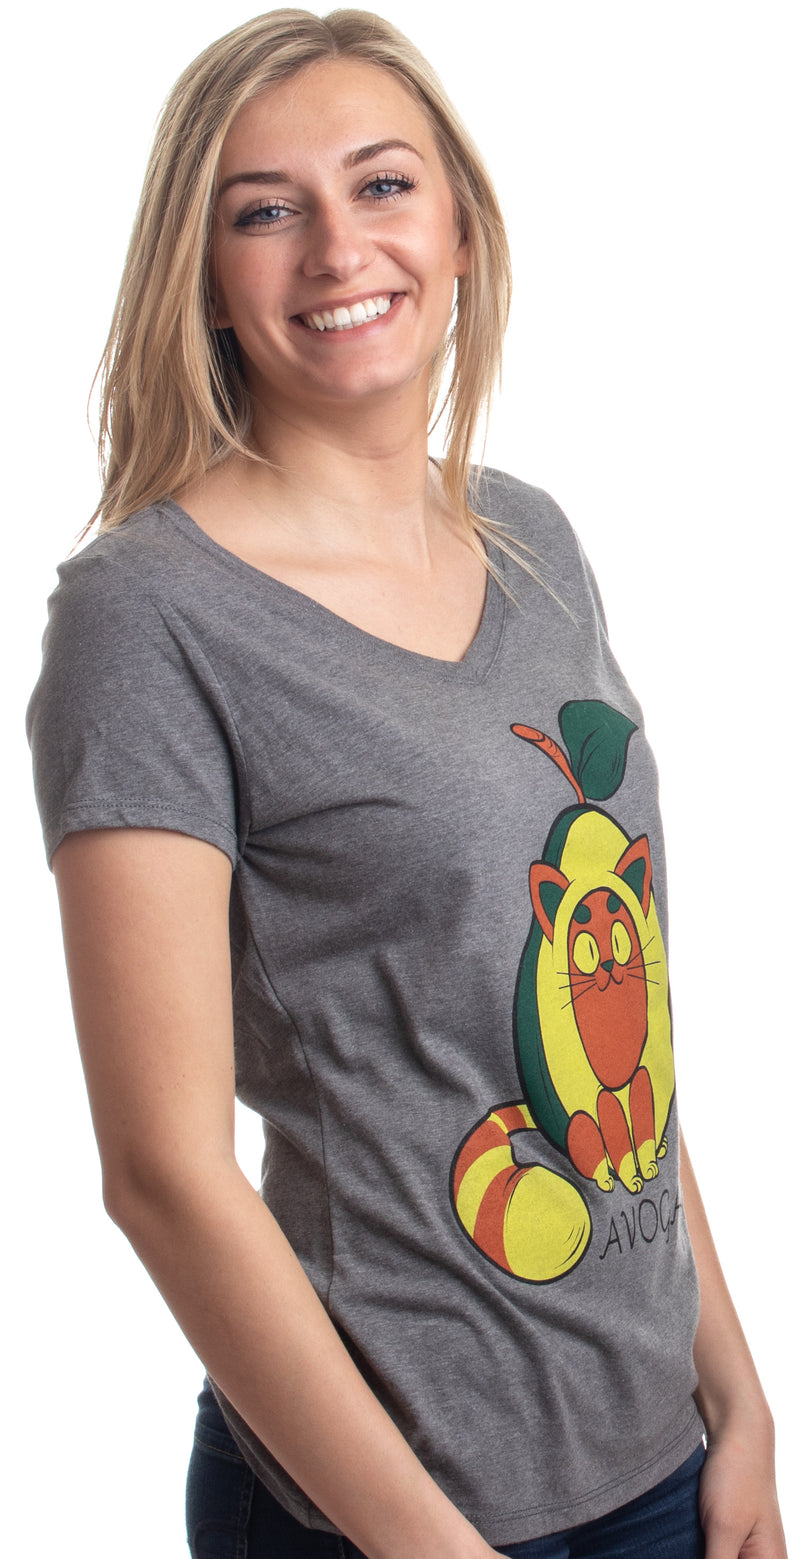 Avogato | Funny Cute Avocado Cat Joke Arigato Graphic V-neck T-shirt for Women